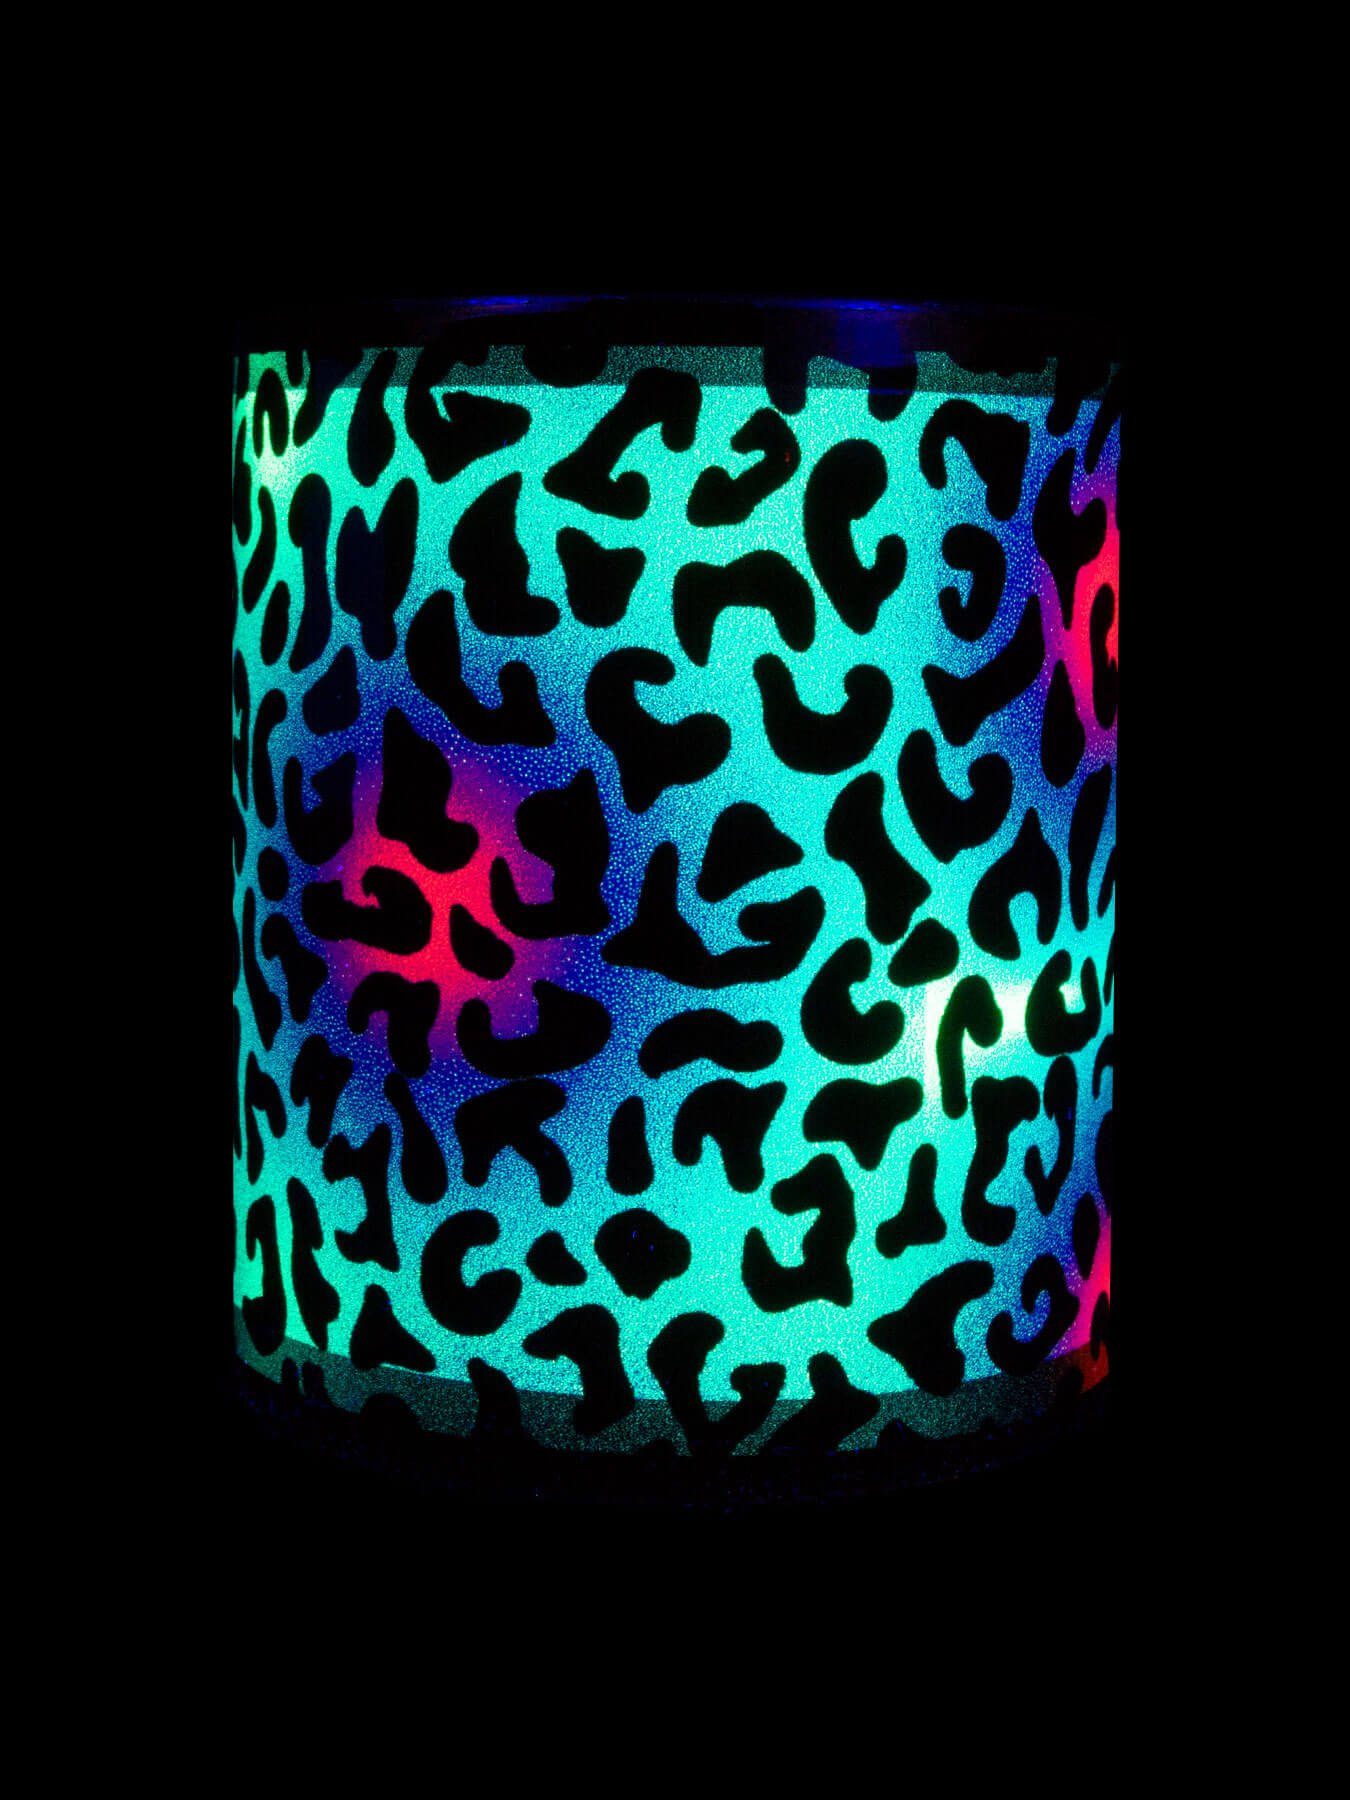 unter Motiv Tasse Cup PSYWORK Fluo UV-aktiv, "Animal leuchtet Leopard", Tasse Keramik, Schwarzlicht Neon Print